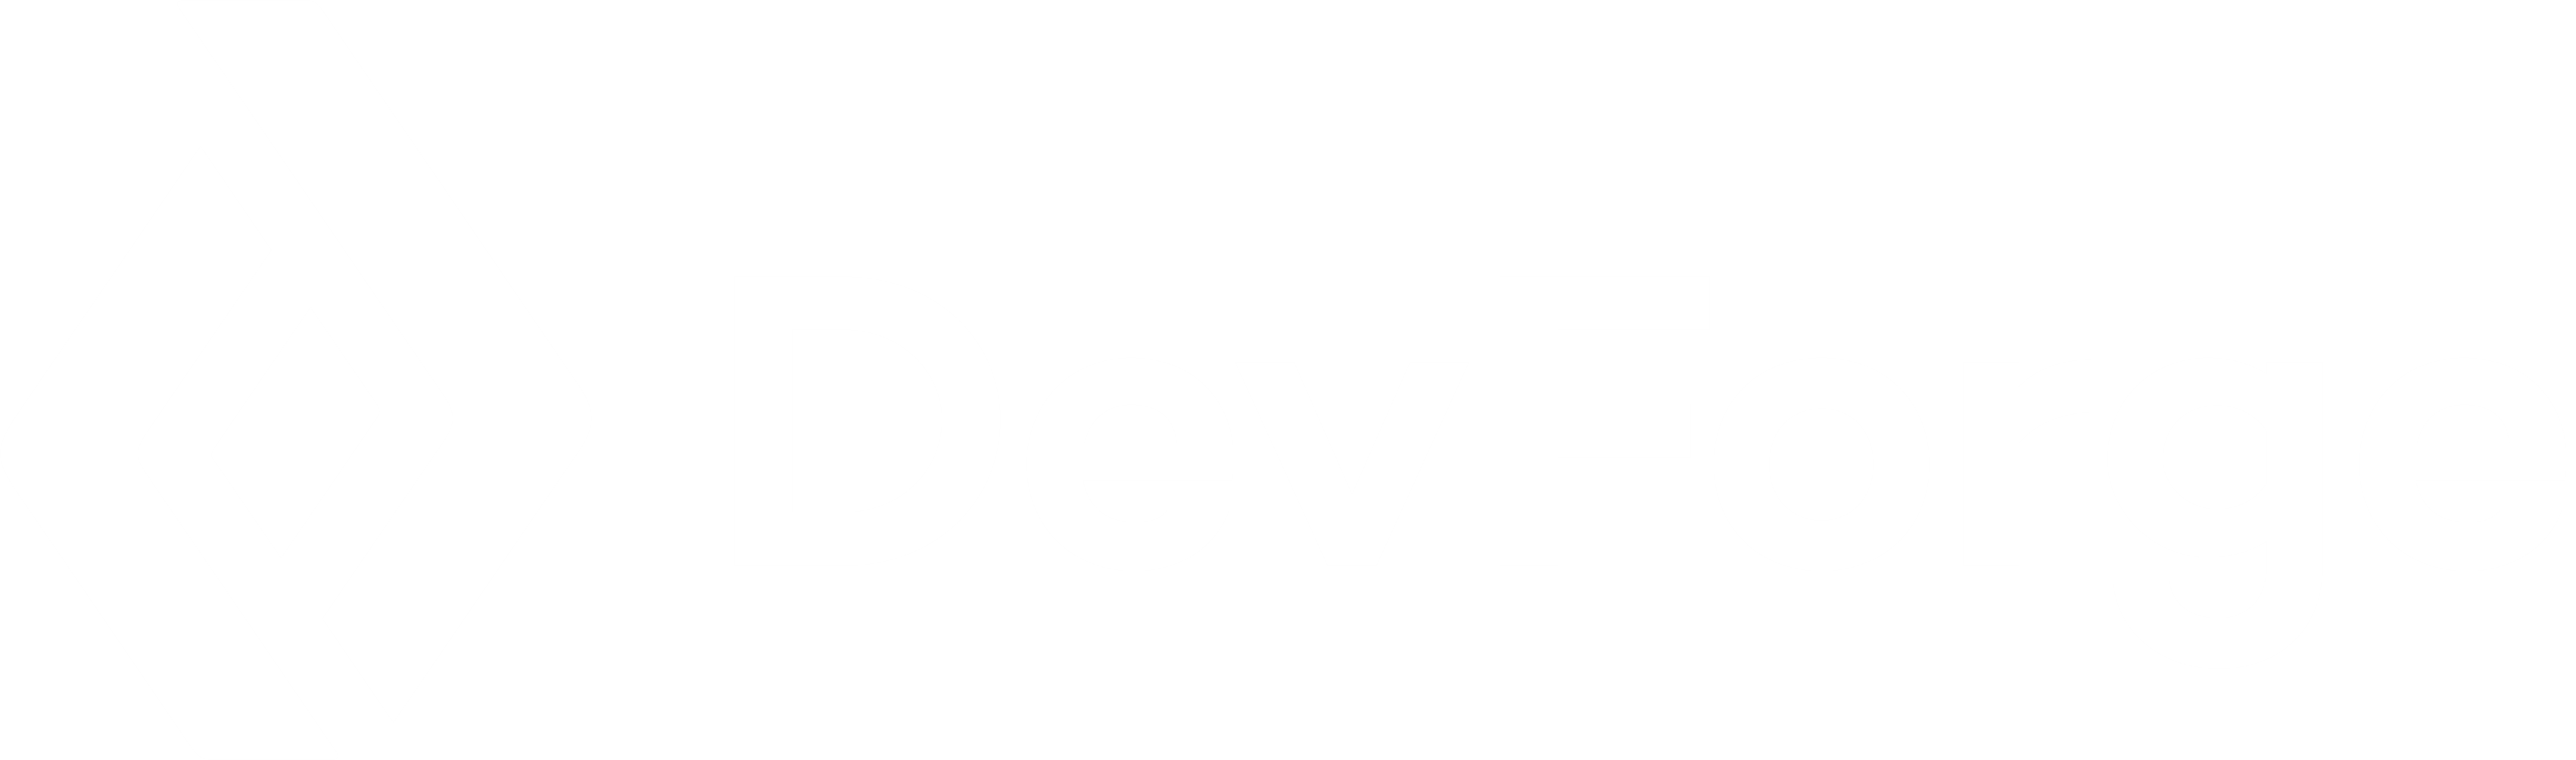 DevForge Logo